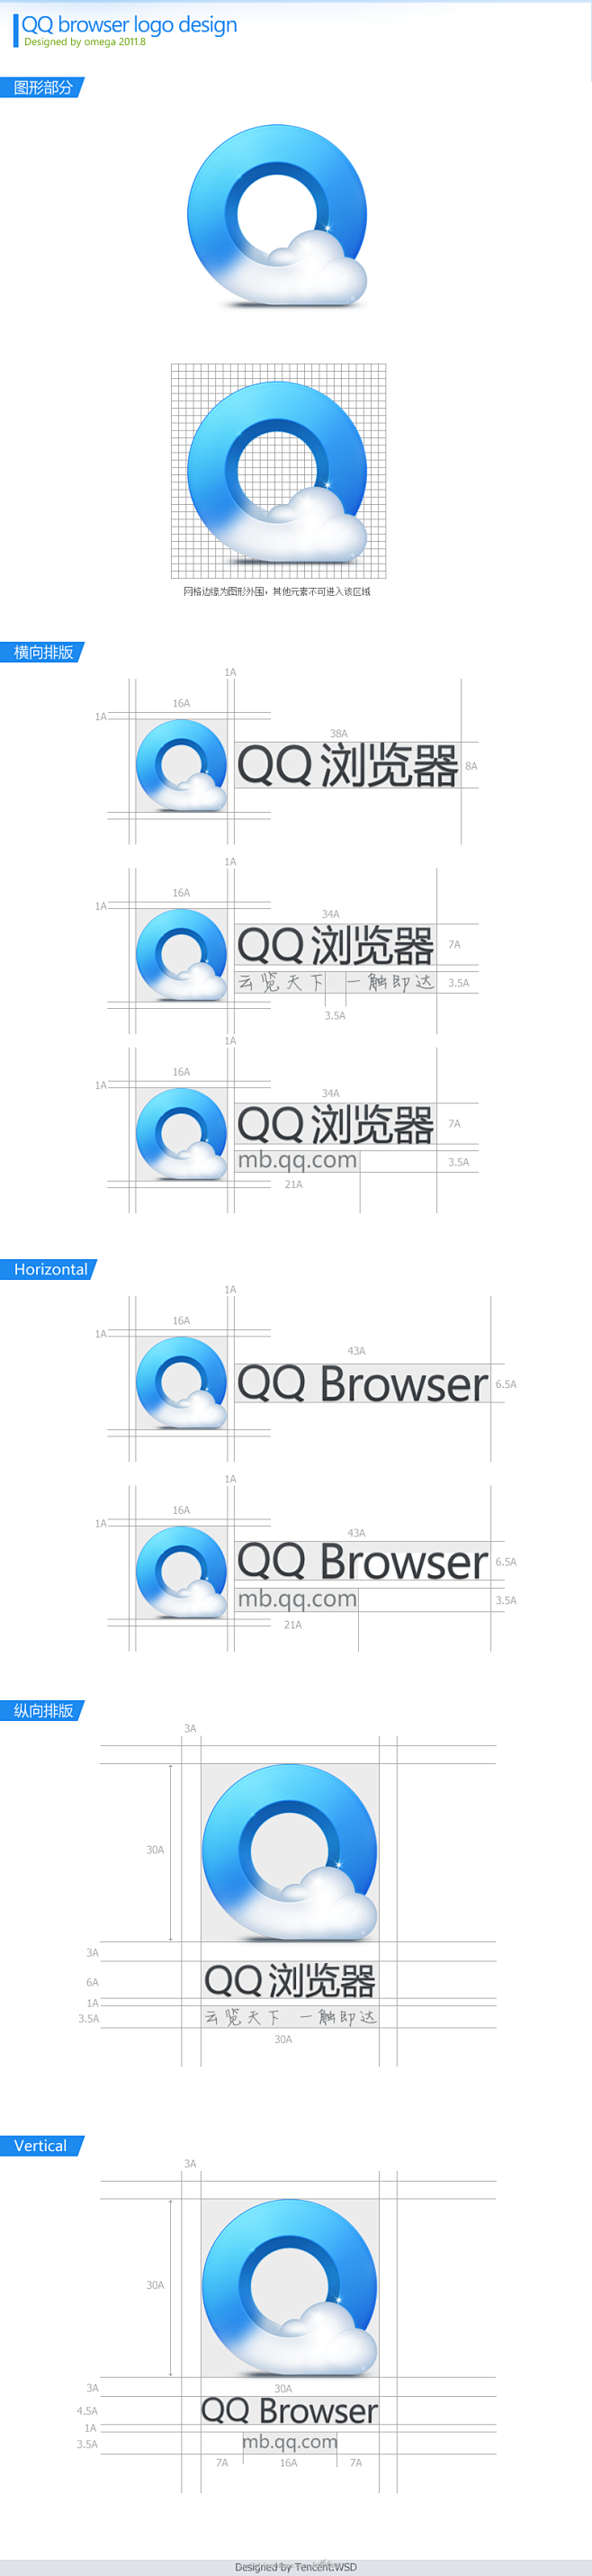 手机QQ浏览器logo设计 - 图标设计...